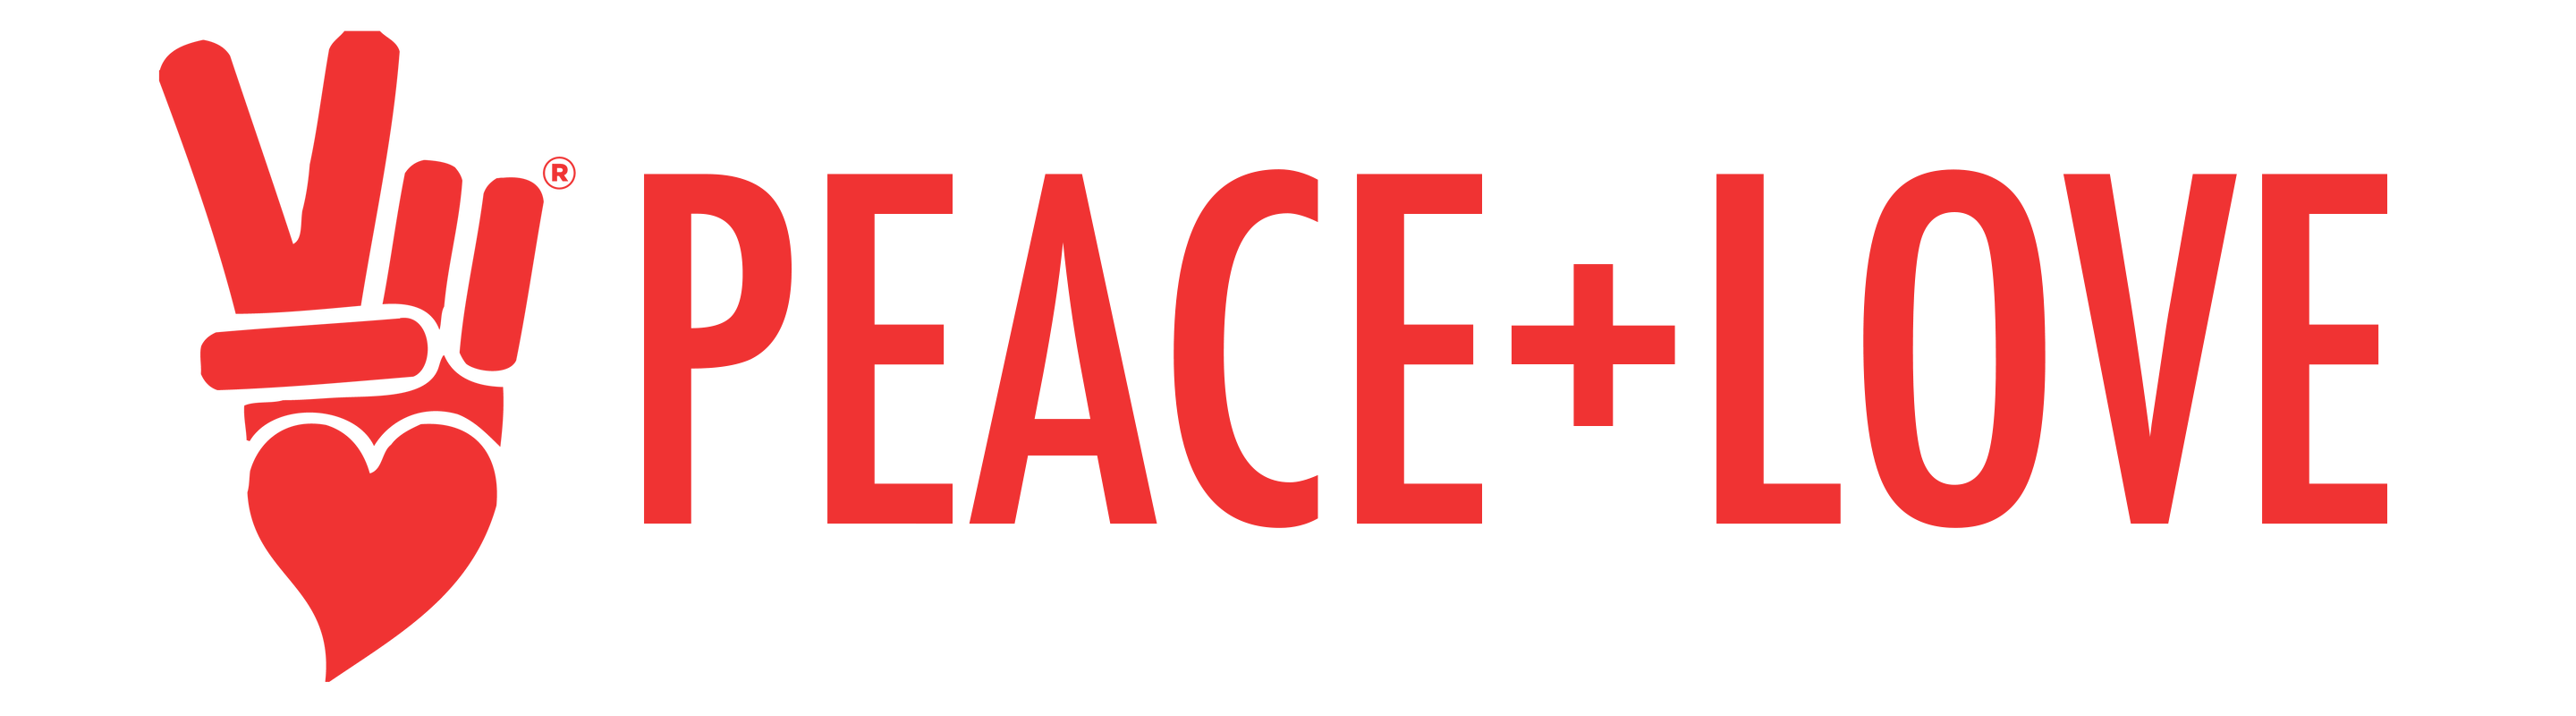 We Need Peace & Love